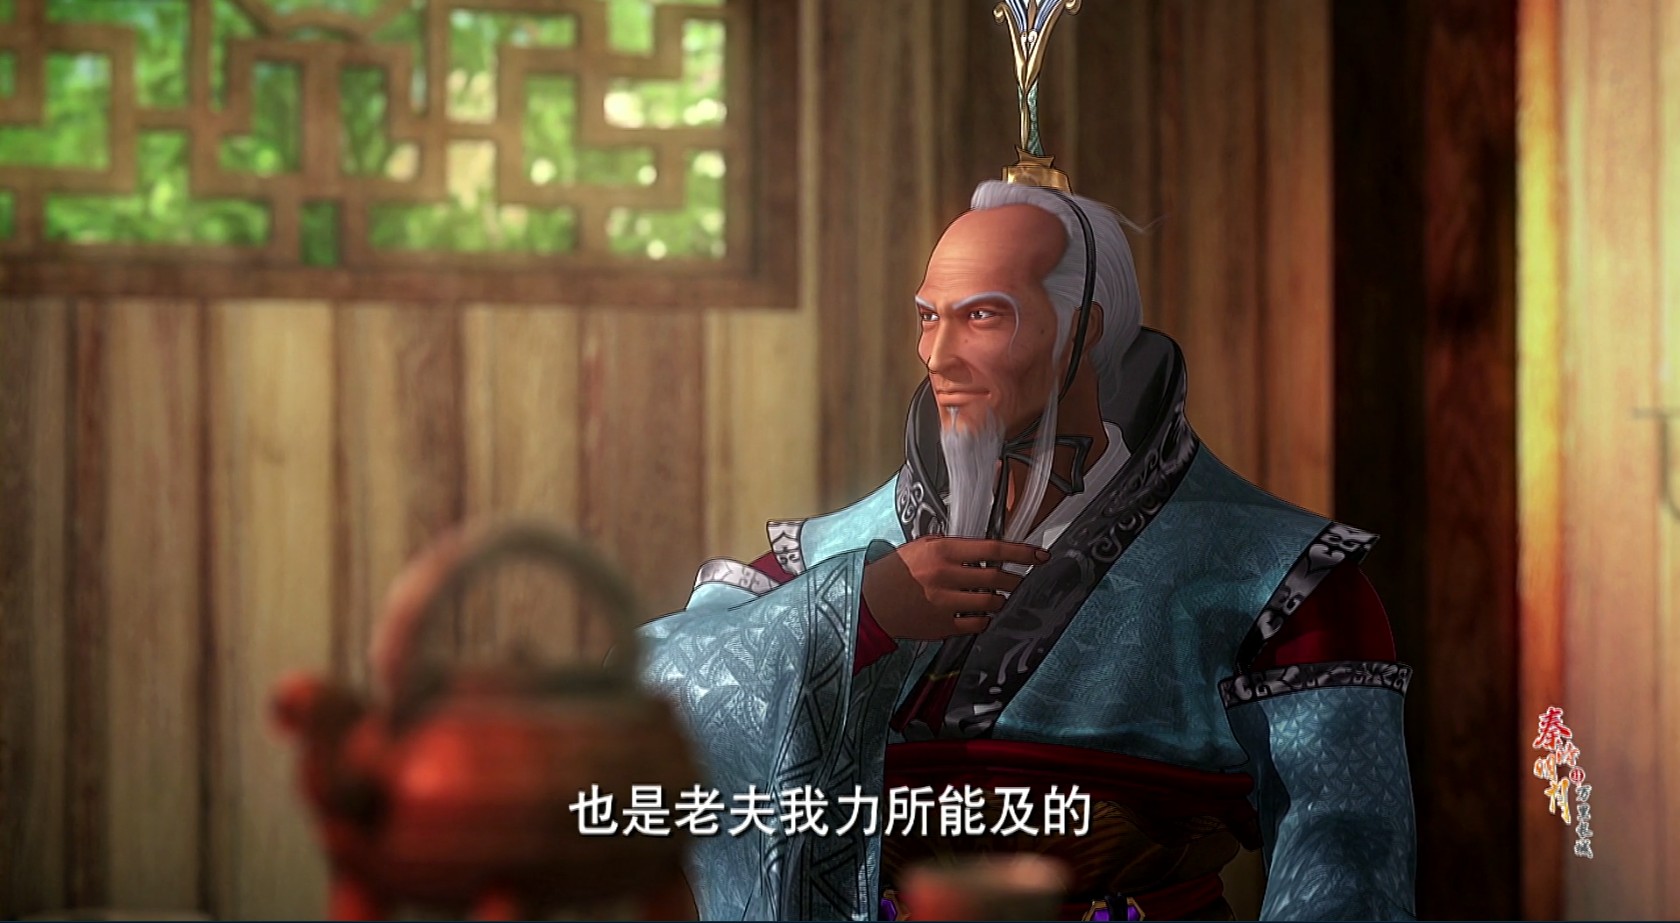 秦时明月第六季,六剑奴包围儒家,你认为儒家能消灭罗网组织吗?